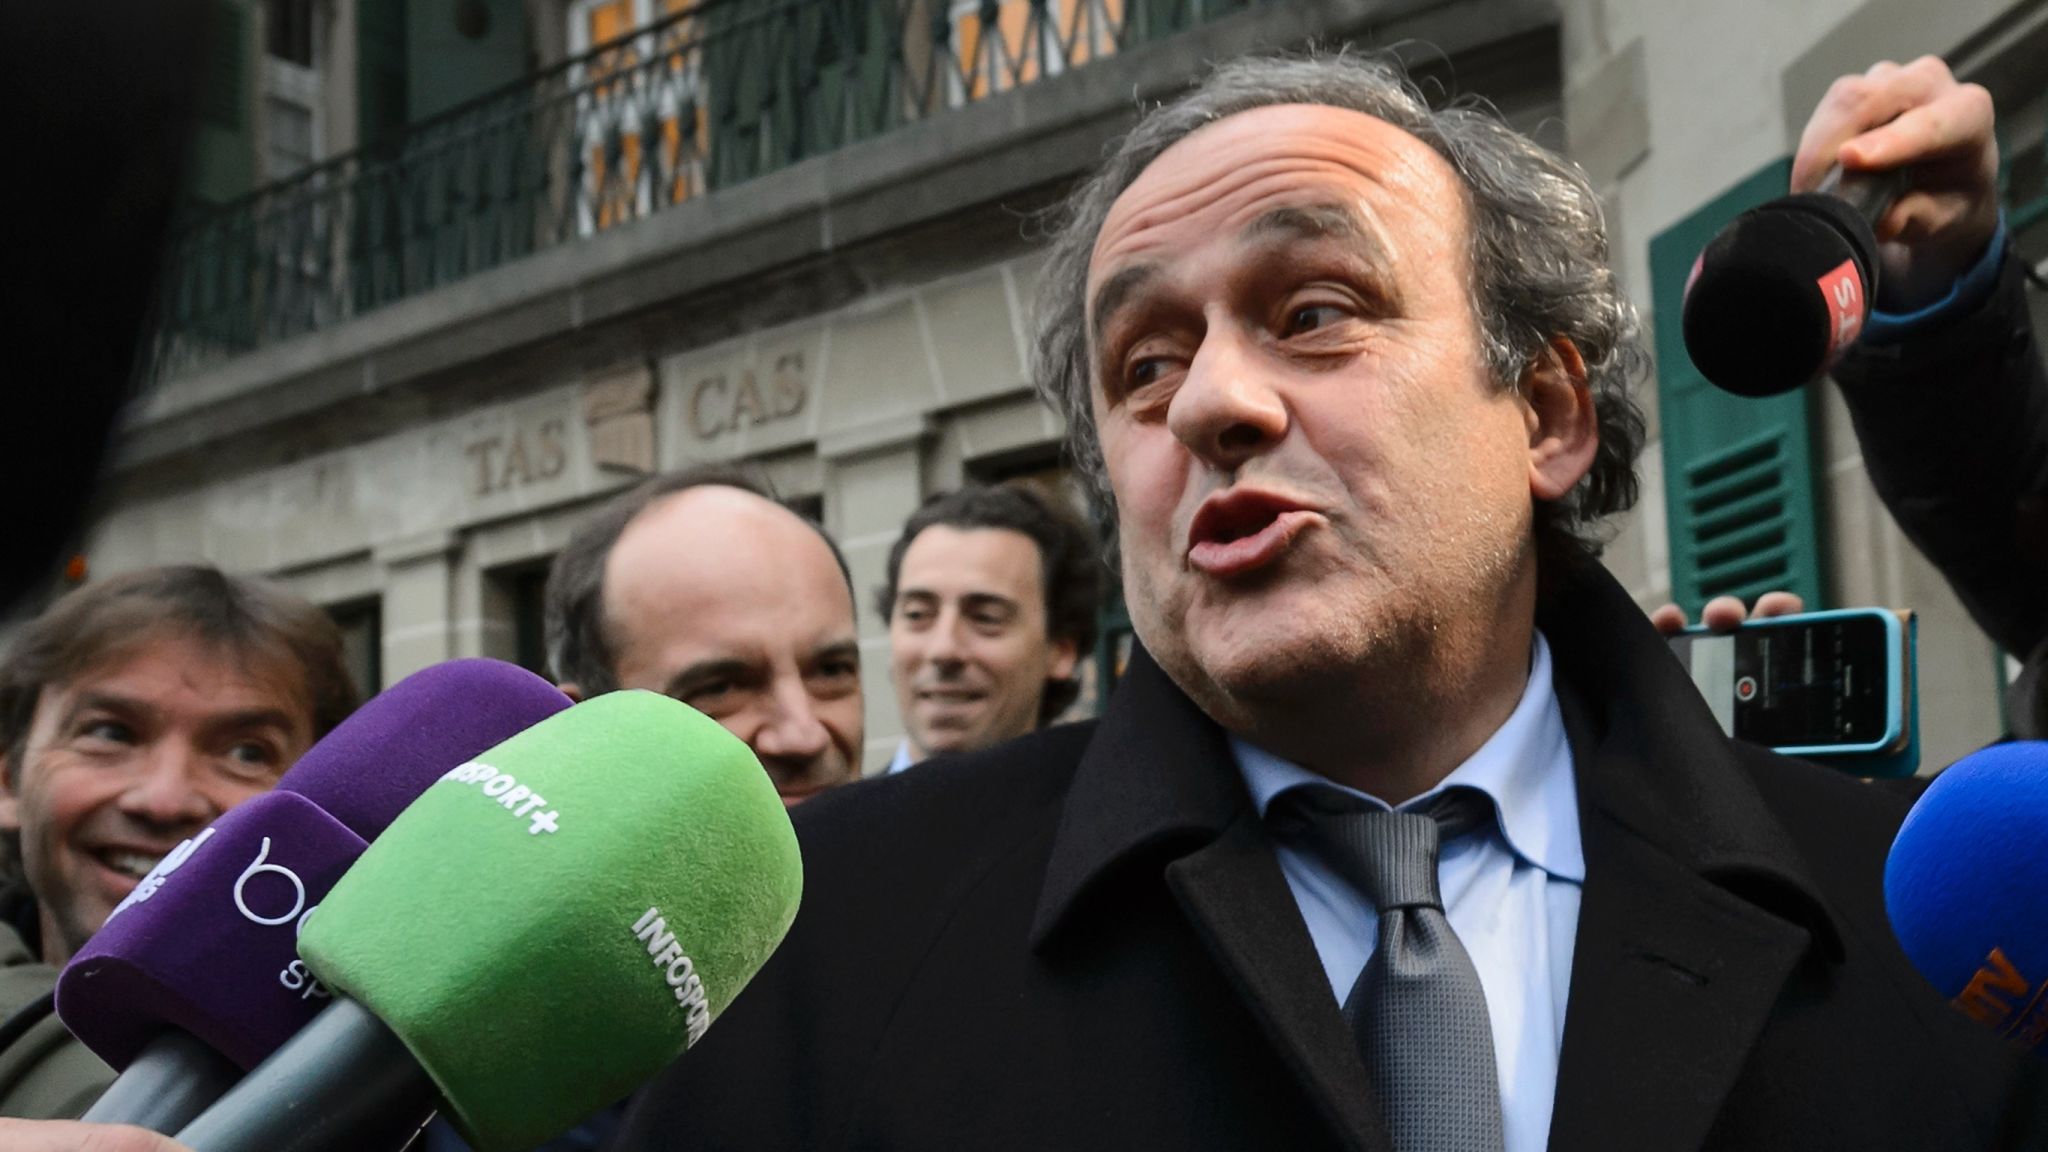 Detienen al expresidente de la UEFA Michel Platini en Francia acusado supuestamente de corrupción